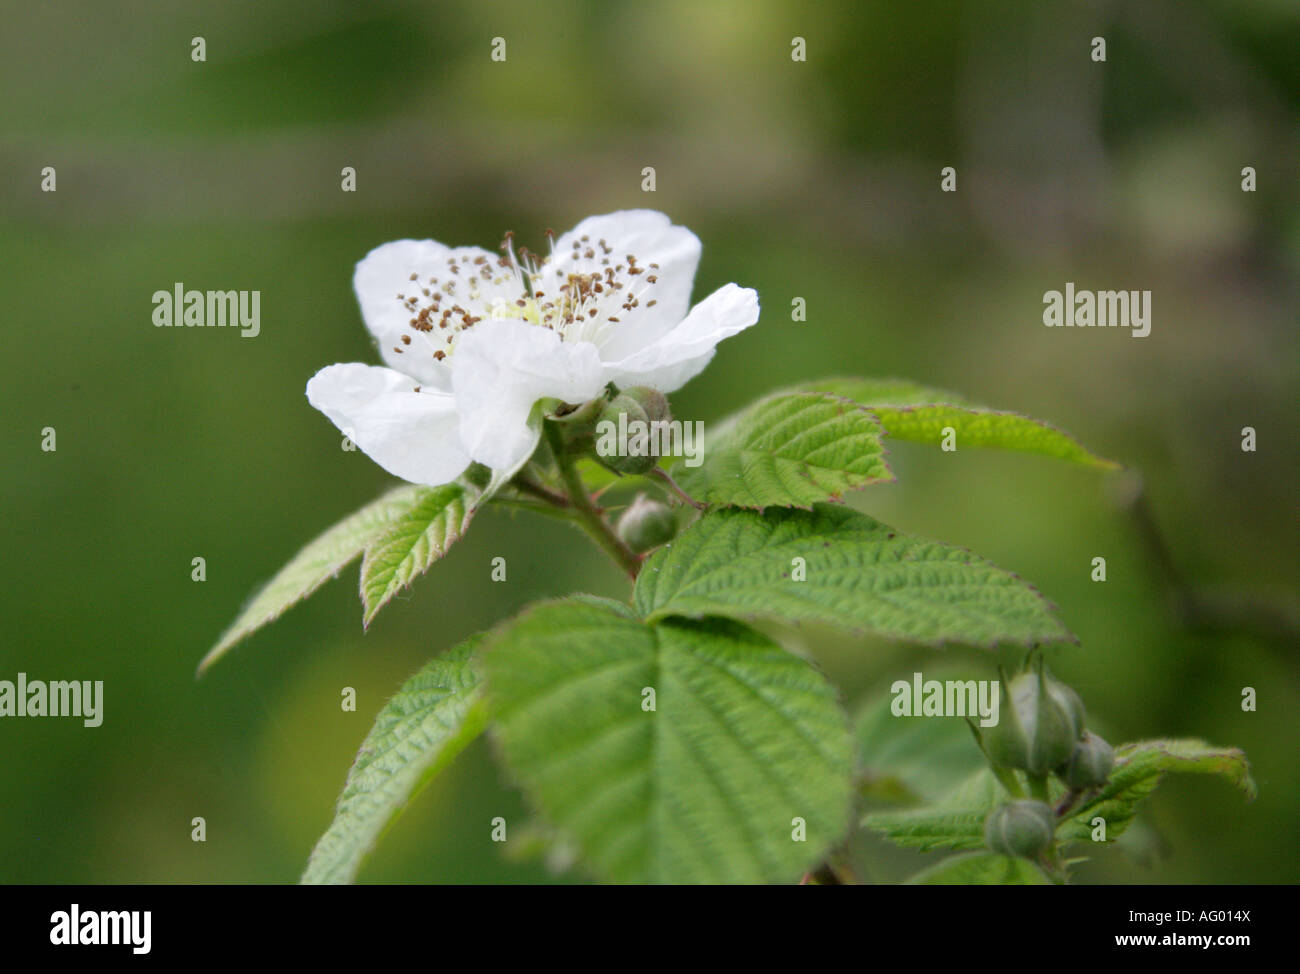 Bramble Flower, Rubus fruticosus, Rosaceae Stock Photo